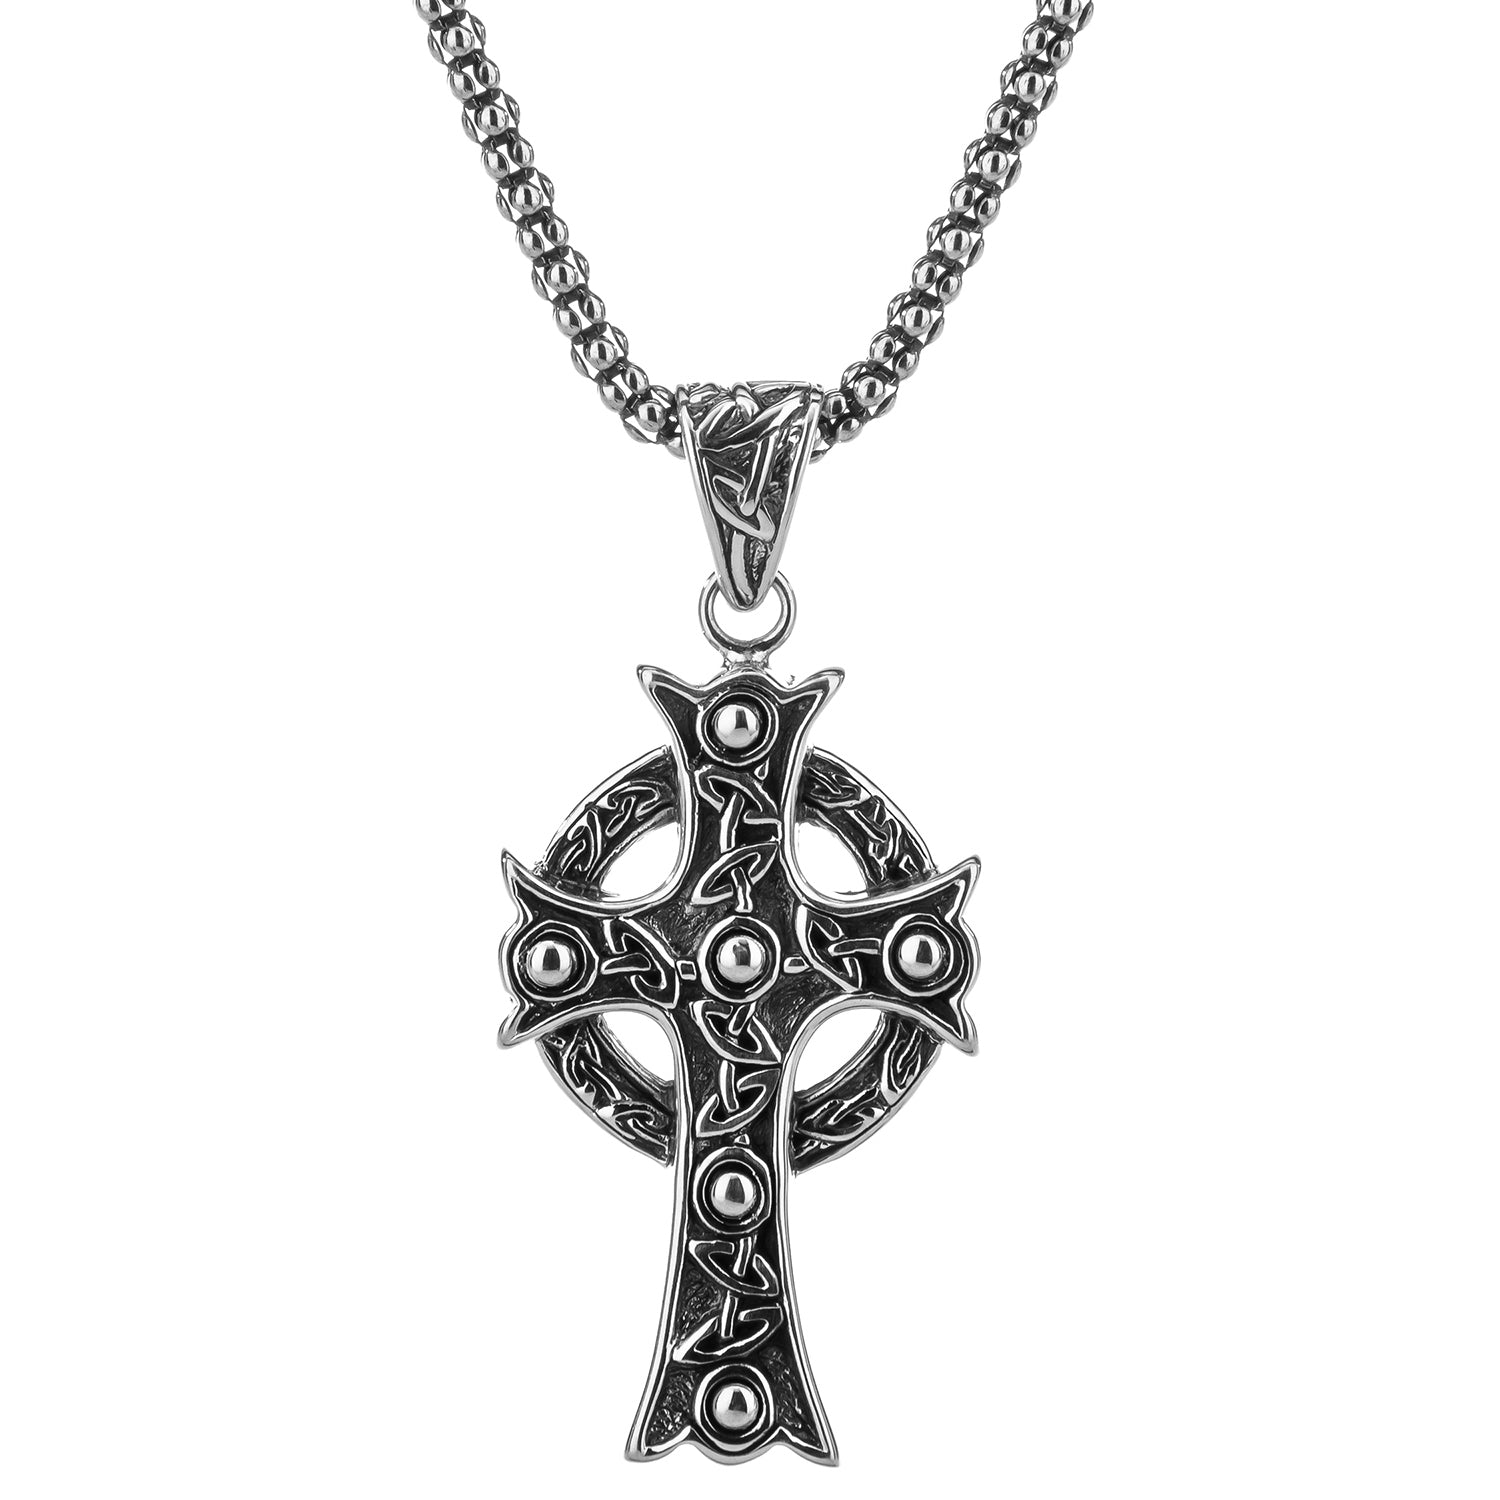 Ornate Cross Necklace – Love Stylize